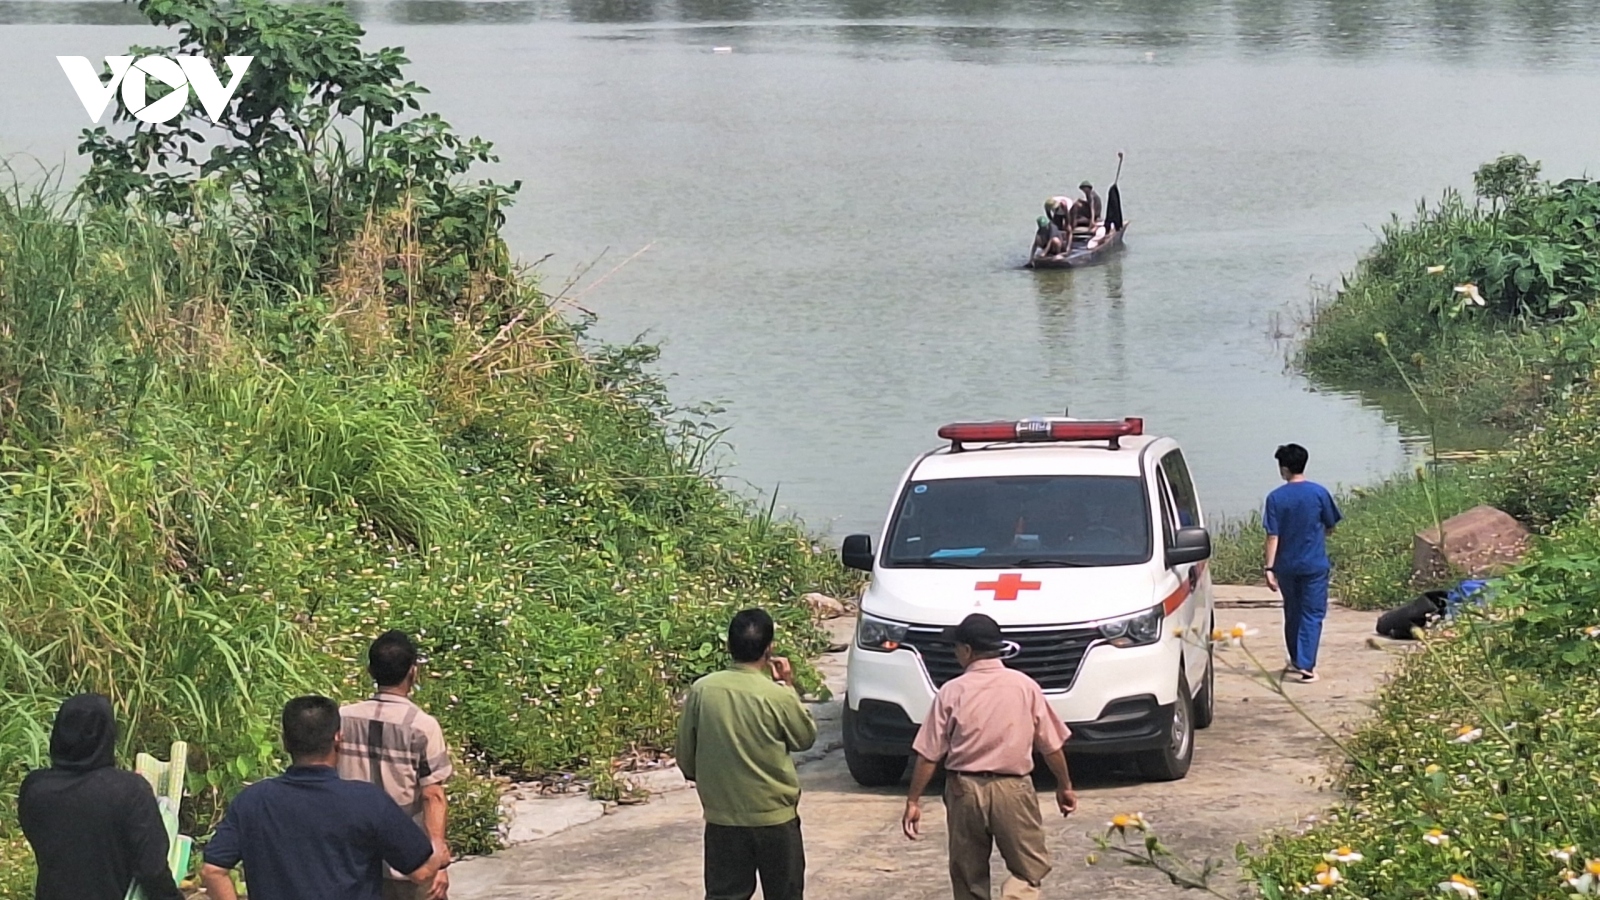 Bắc Ninh thông tin vụ 2 nữ sinh lớp 9 nghi nhảy cầu Kinh Dương Vương